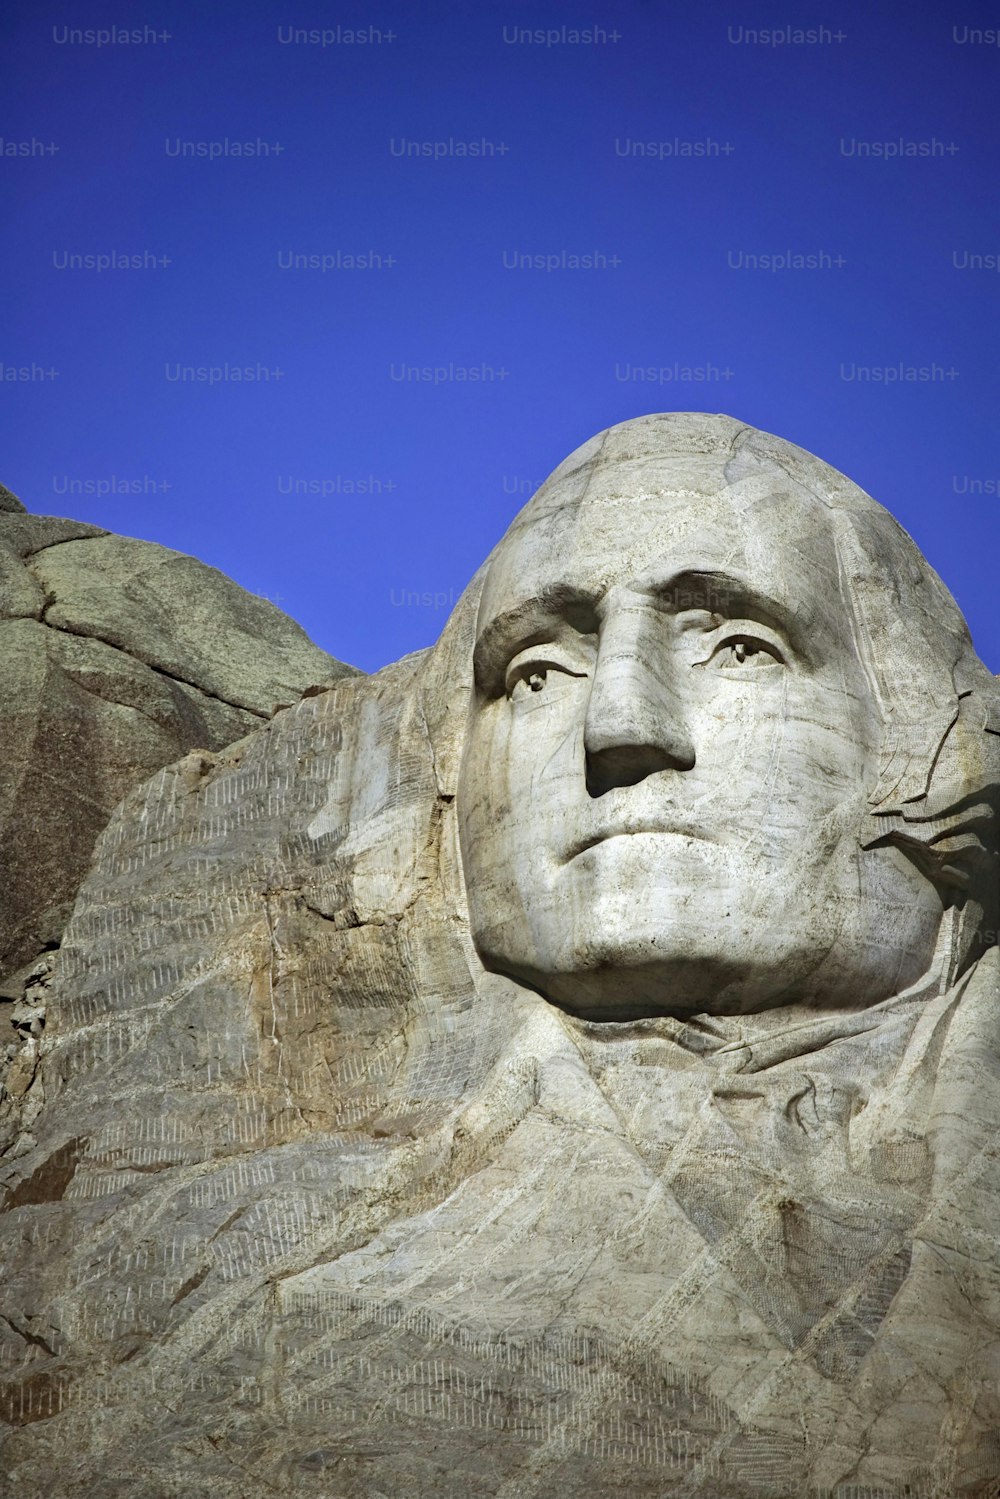 Das Gesicht von Abraham Lincoln, das in die Seite eines Berges geschnitzt ist